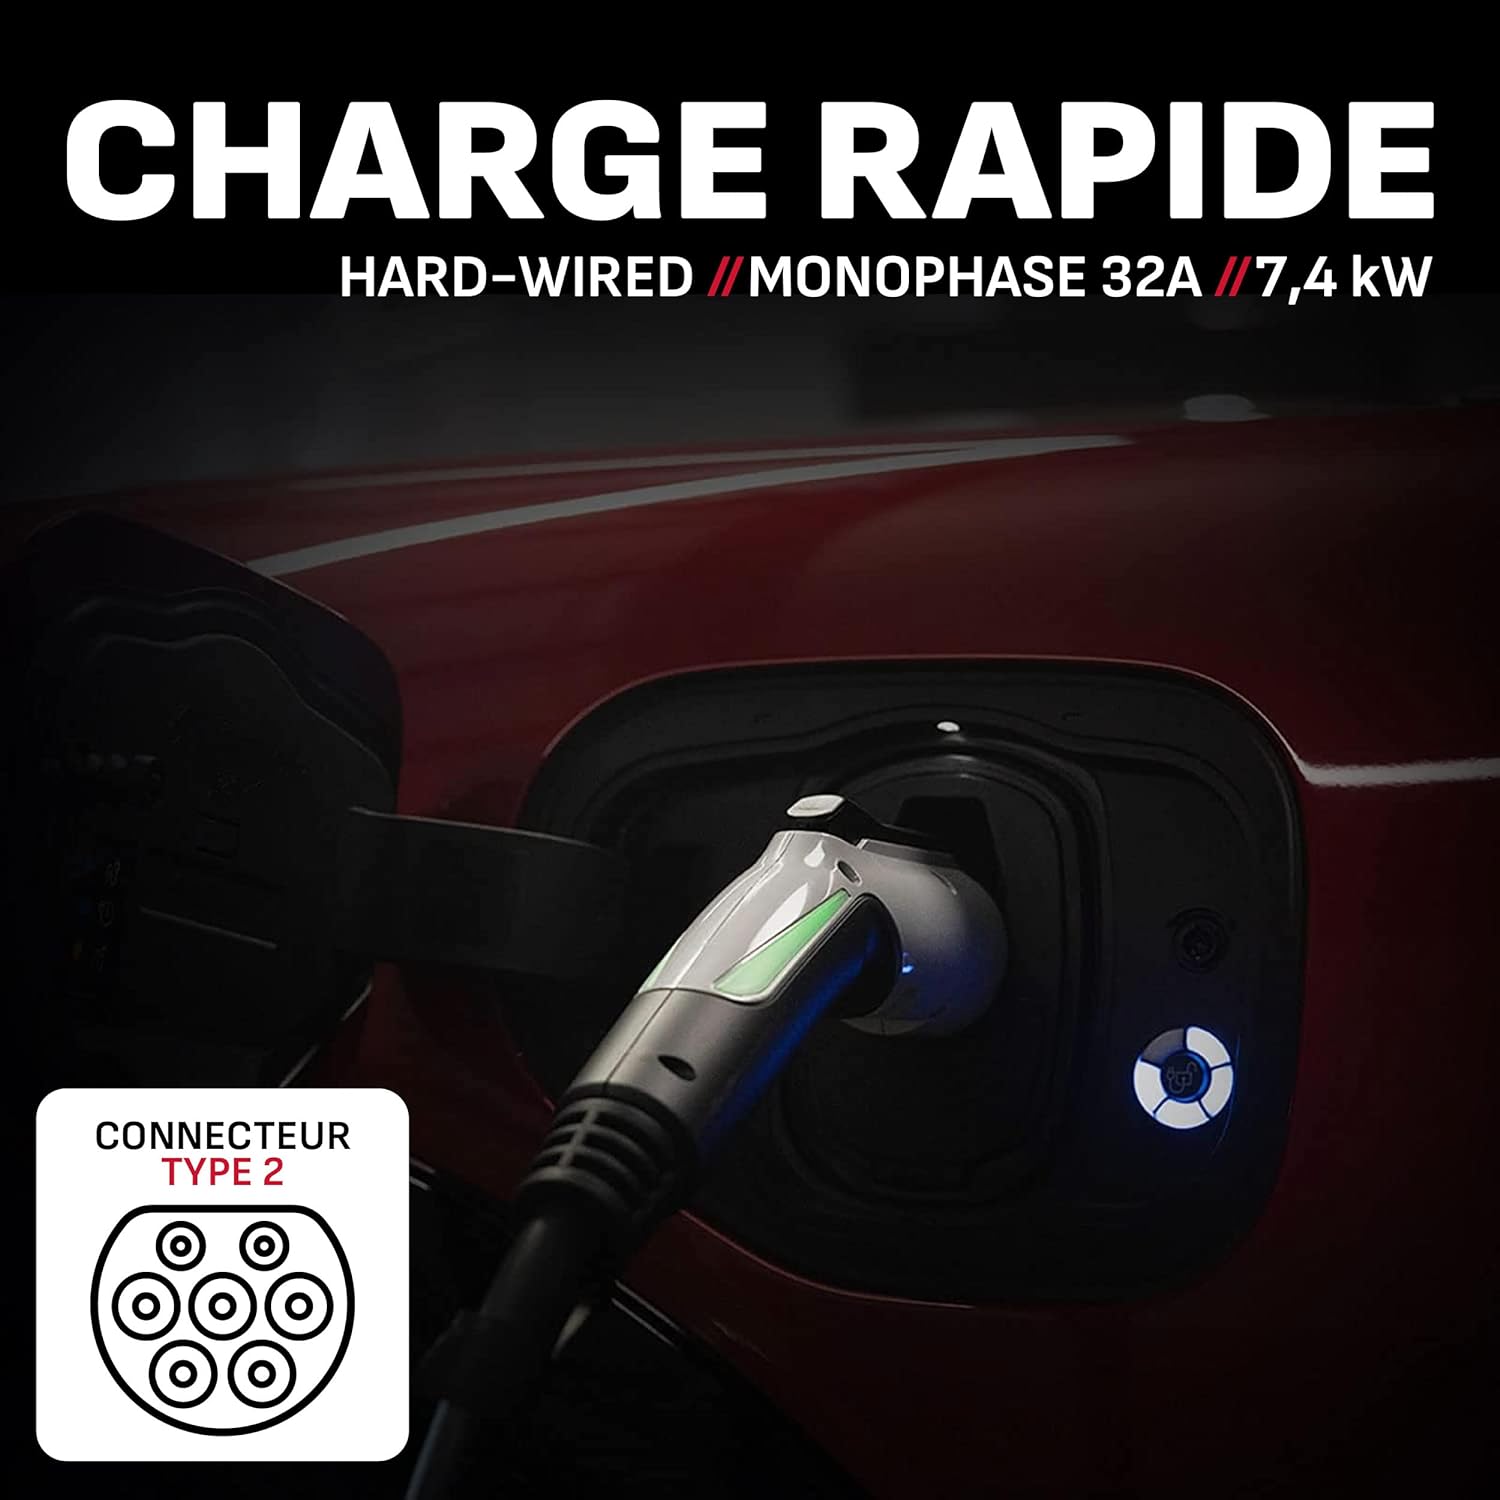 Borne de recharge pour véhicules électriques/hybrides SEV455 220V-240V 32A